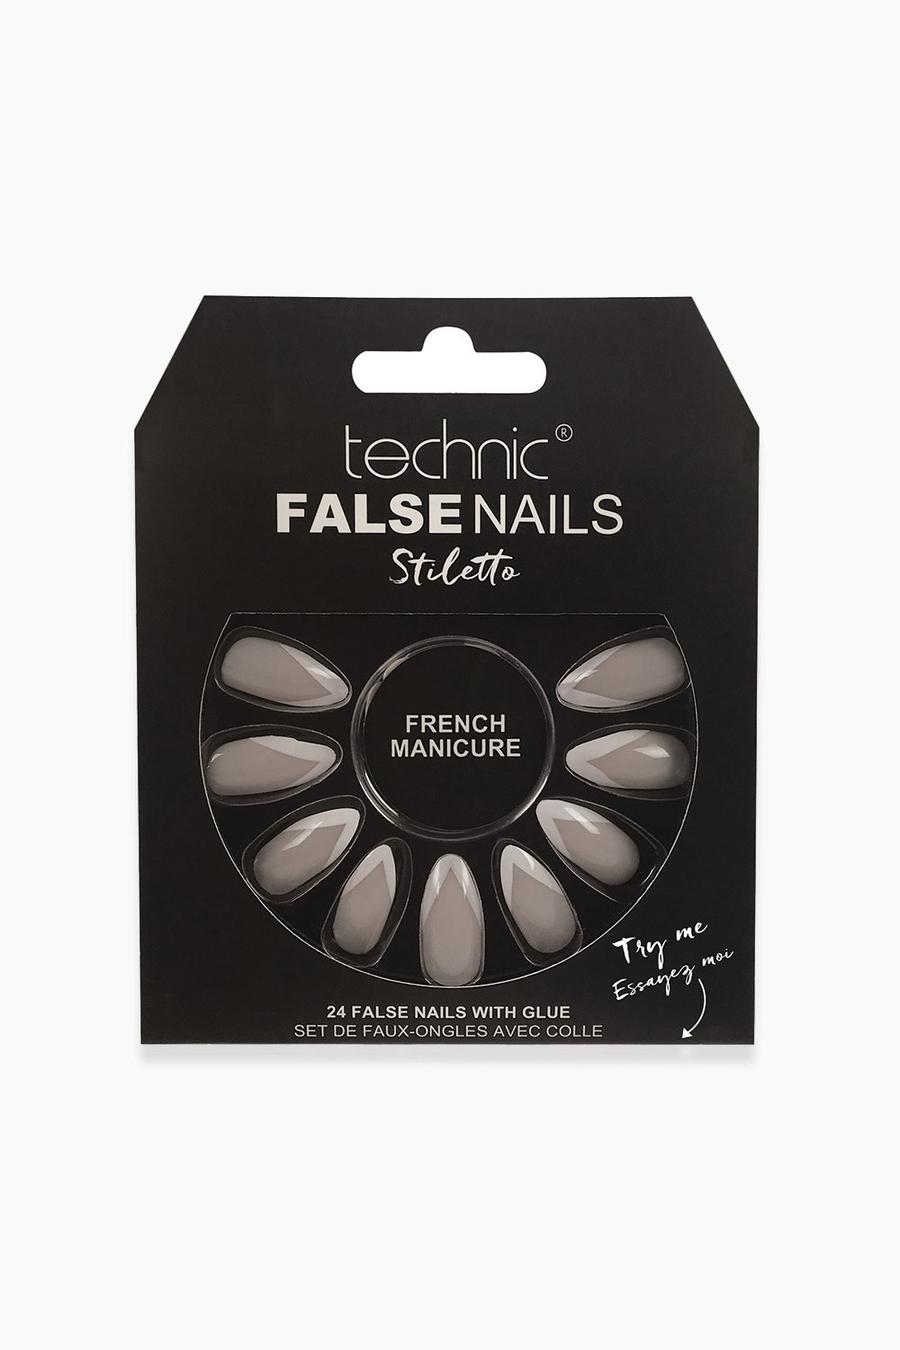 Technic - Unghie finte Stiletto French Manicure, Nude color carne